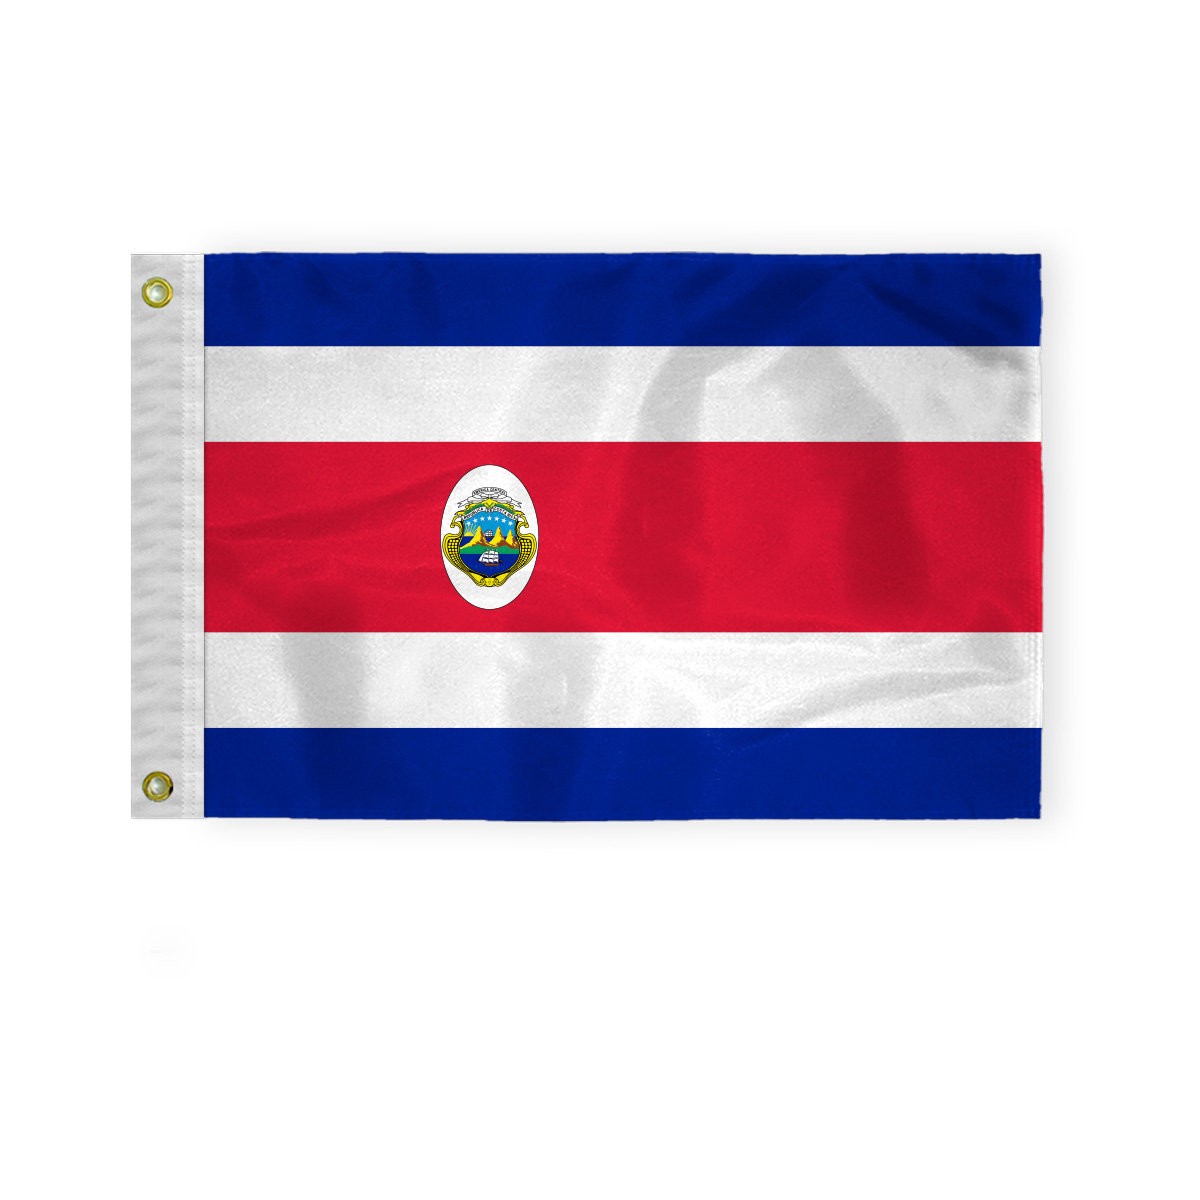 AGAS Costa Rica 12x18 inch Mini Costa Rica Flag 200D Nylon